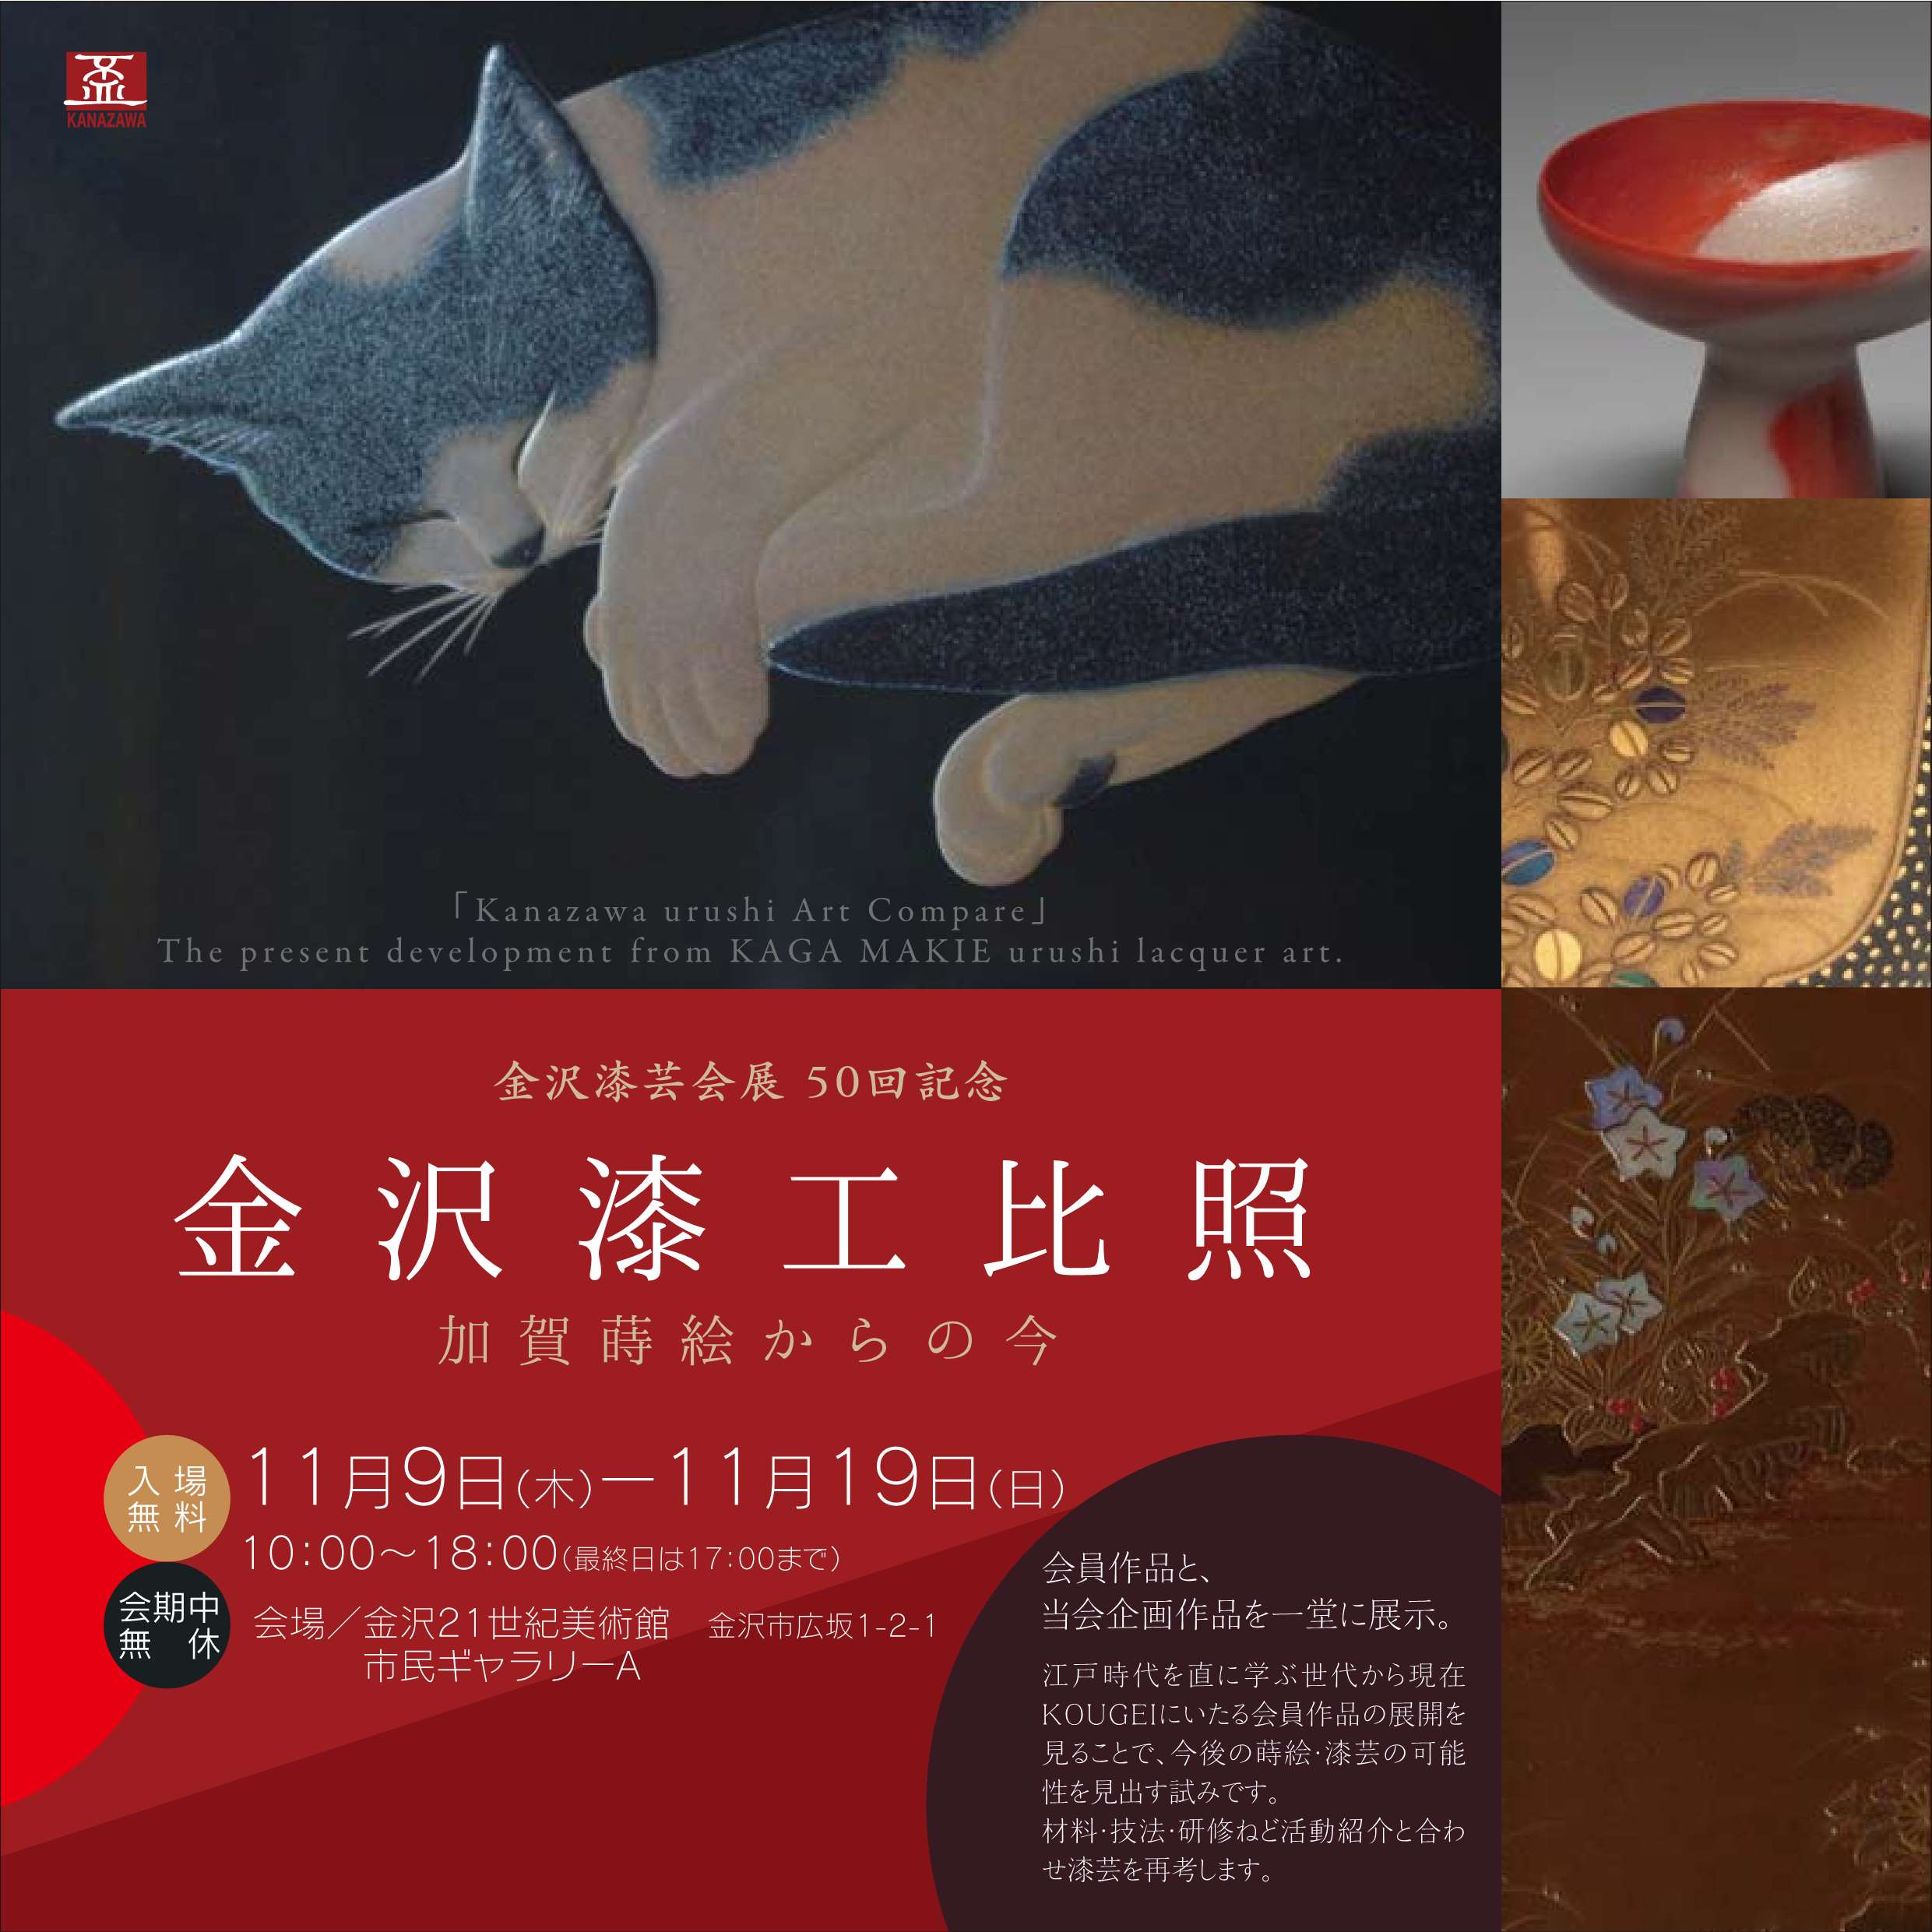 金沢漆芸会展50回展記念「金沢漆工比照-加賀蒔絵からの今-」